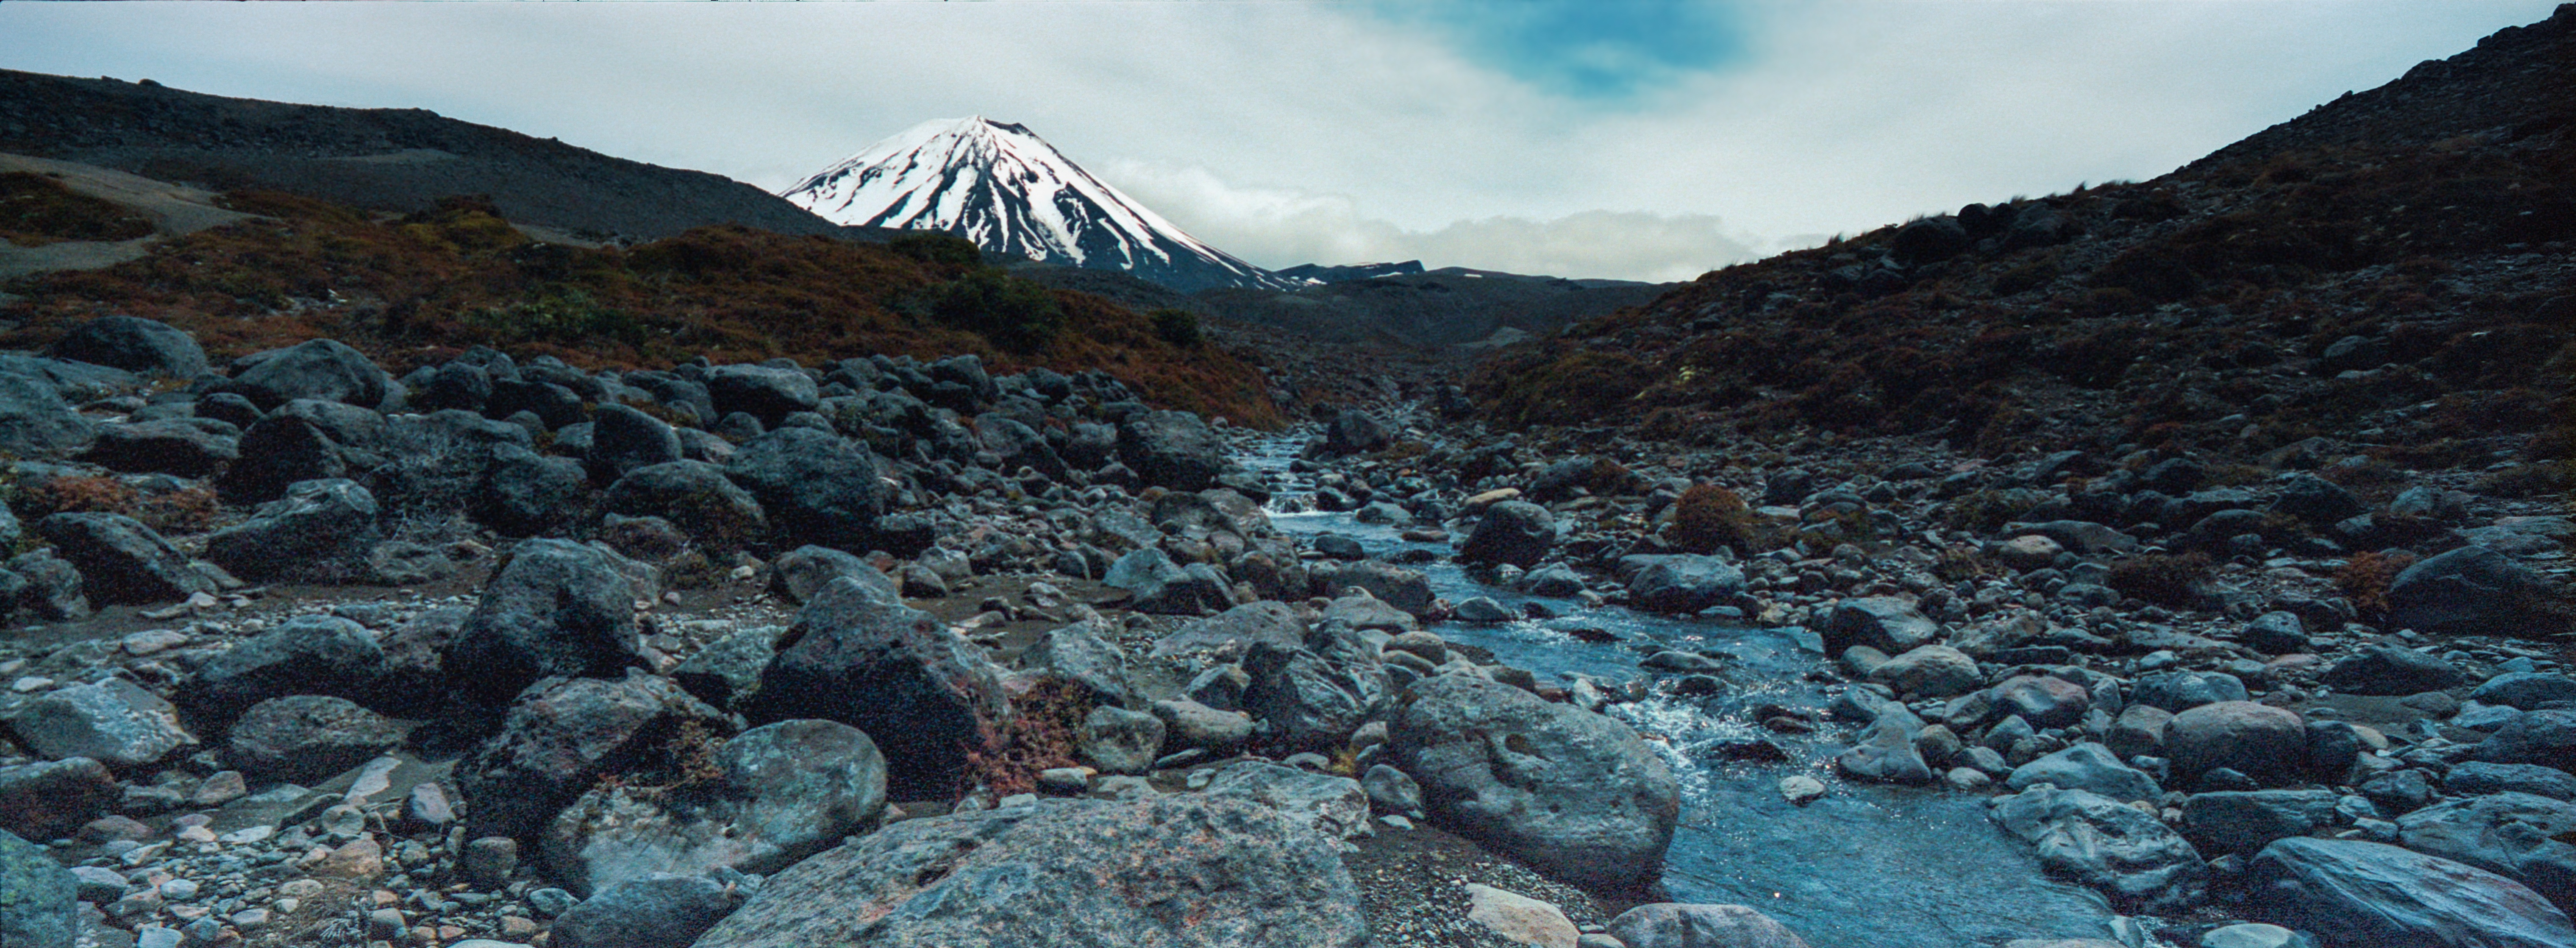 Waihohonu Stream, Tongariro National Park Ruapehu District, North Island